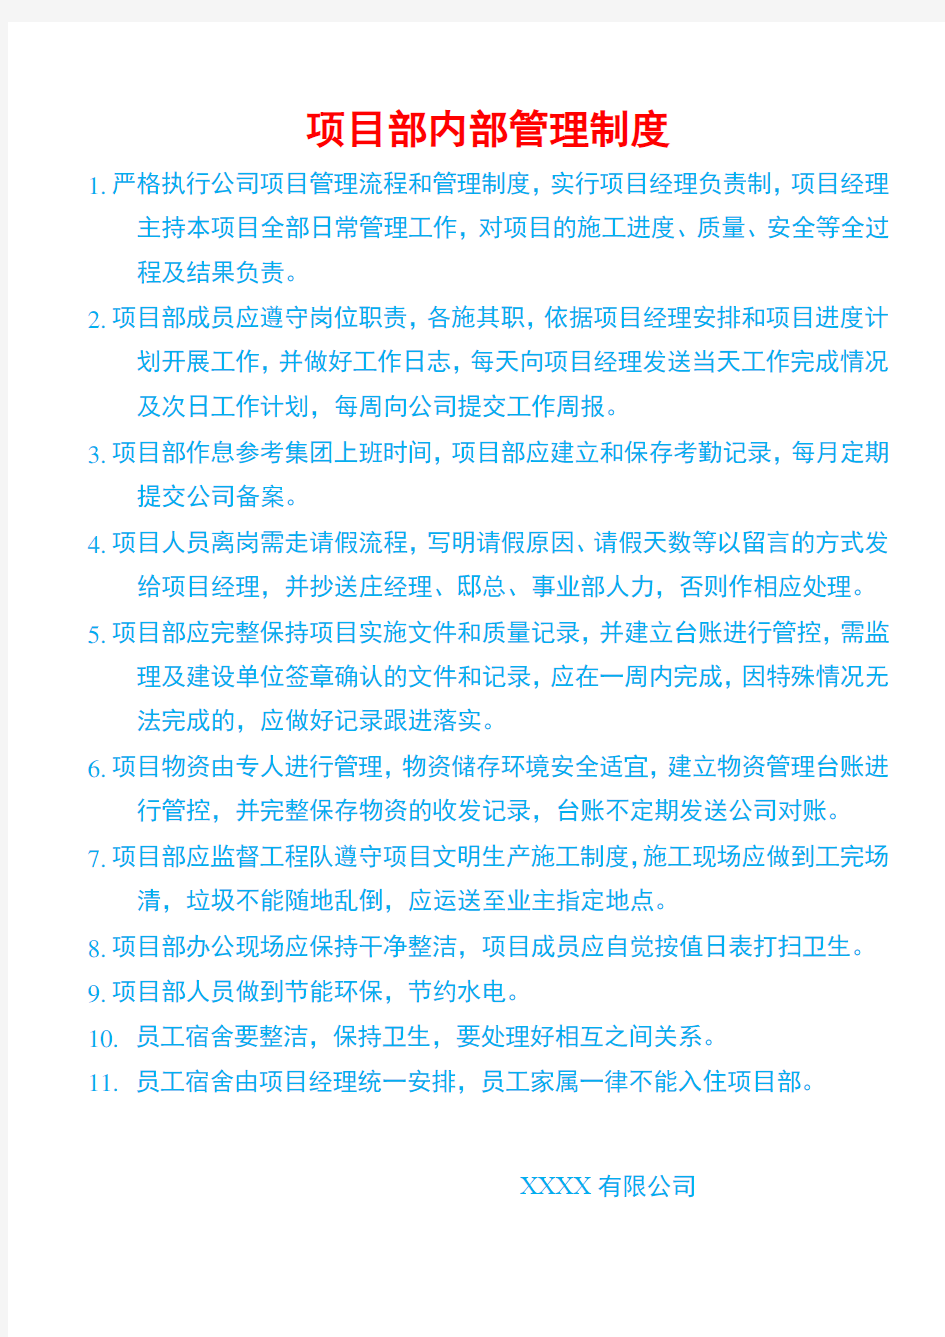 中国联通分公司工程项目部内部管理制度